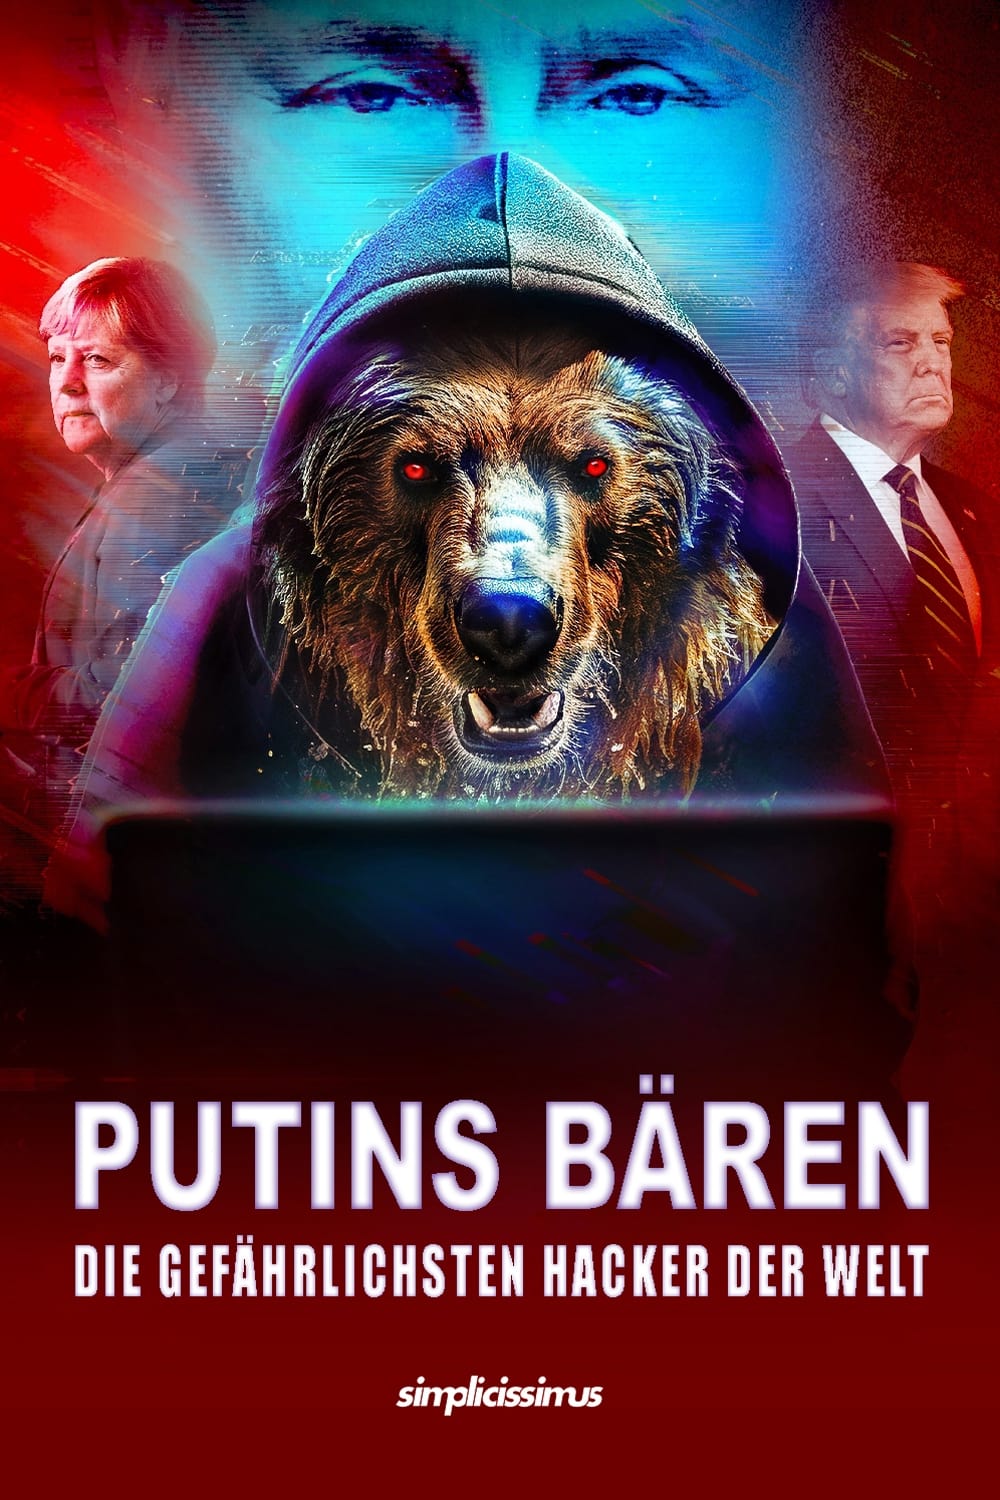 Putins Bären - Die gefährlichsten Hacker der Welt film